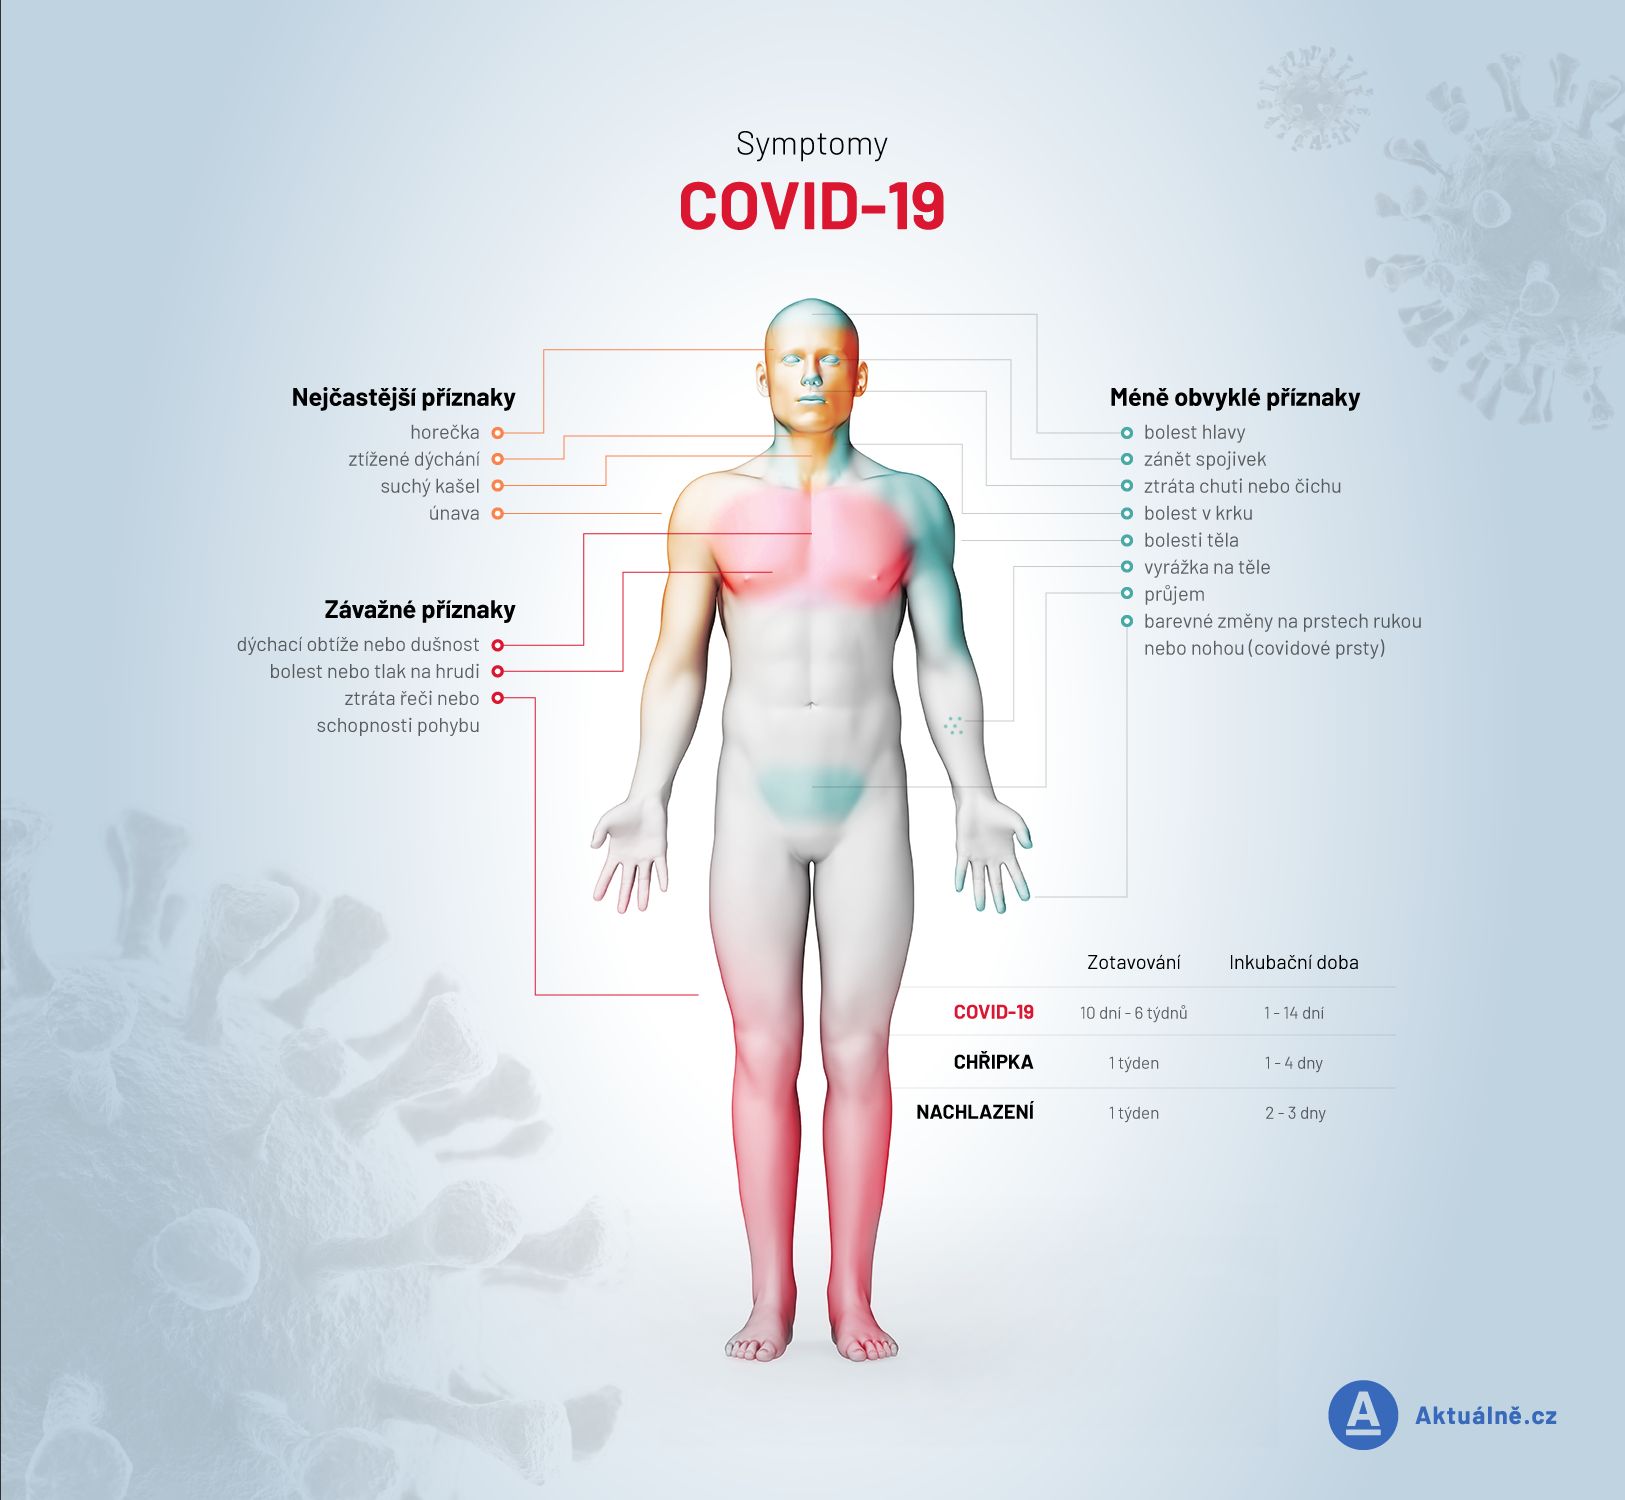 Grafika: symptomy covid-19 přehledně